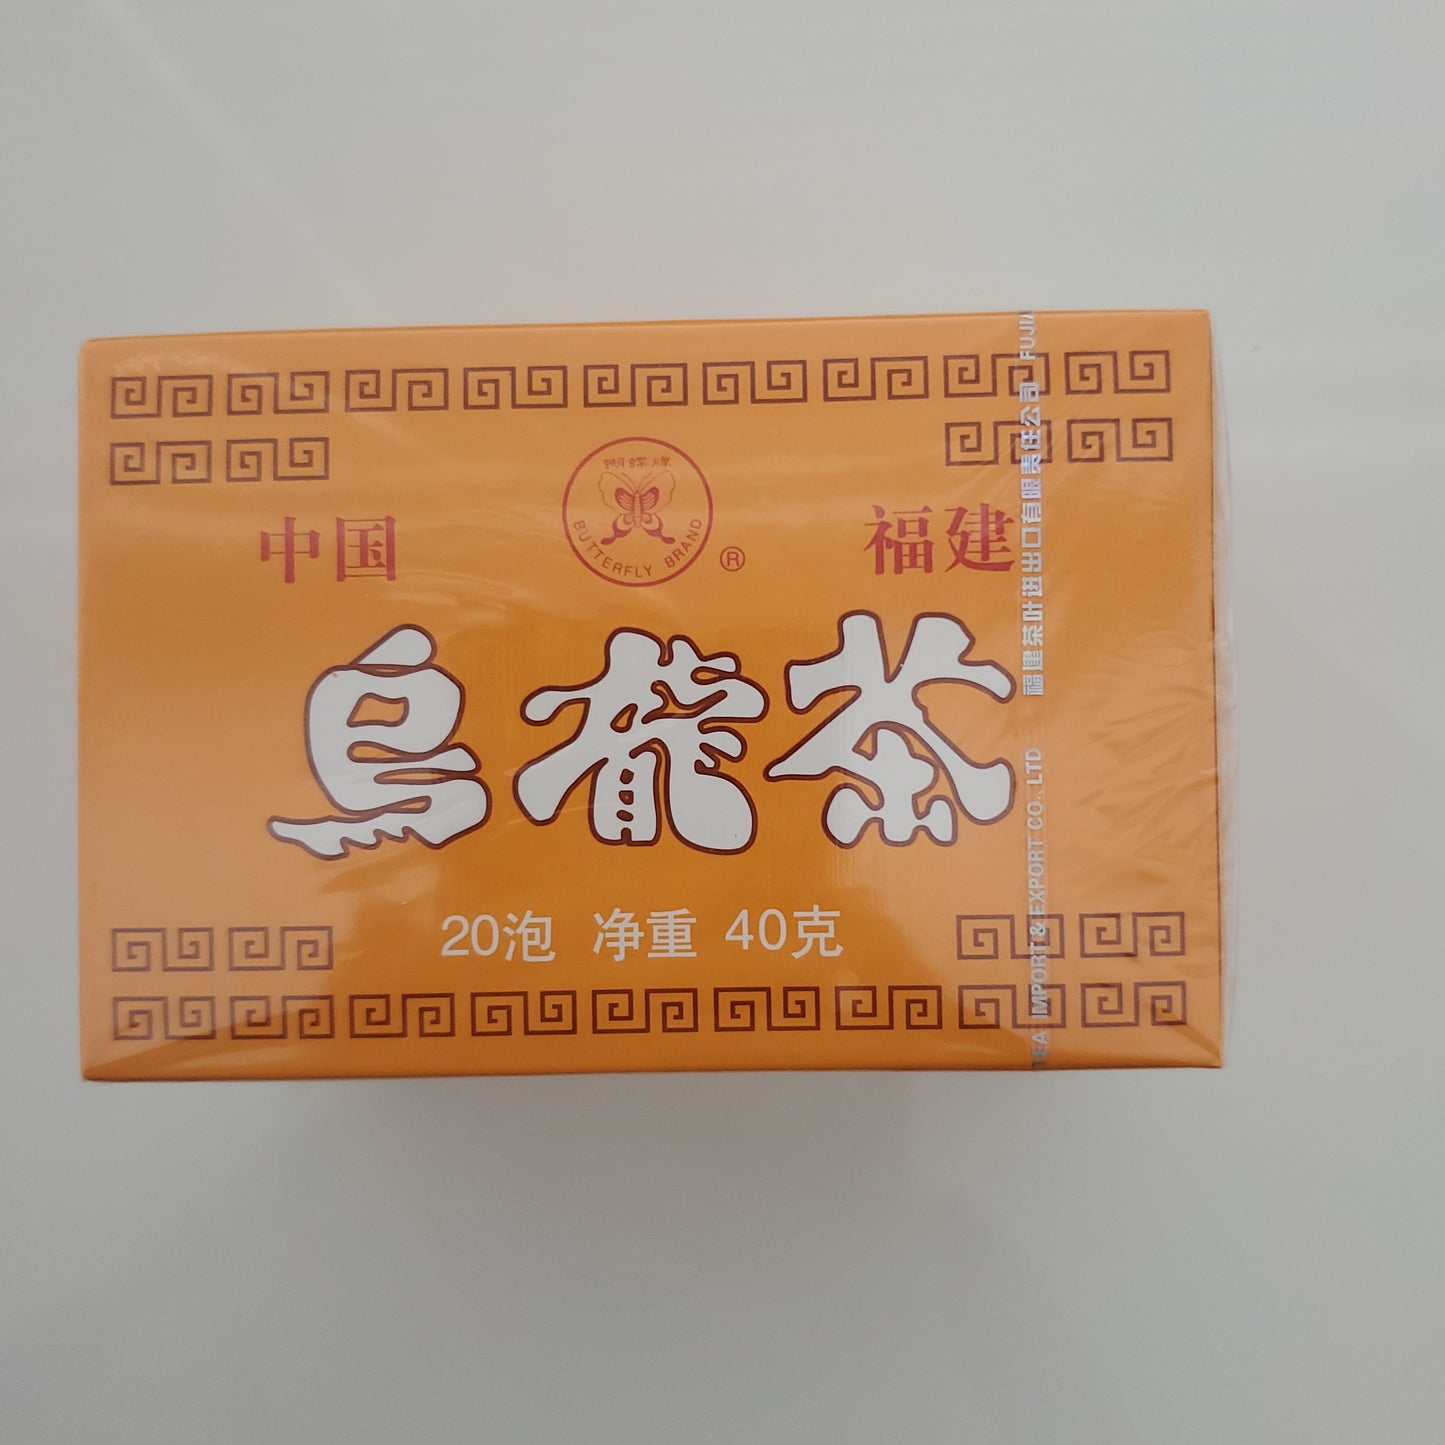 BF Oolong Tea Bag (20 Sachets)  40g